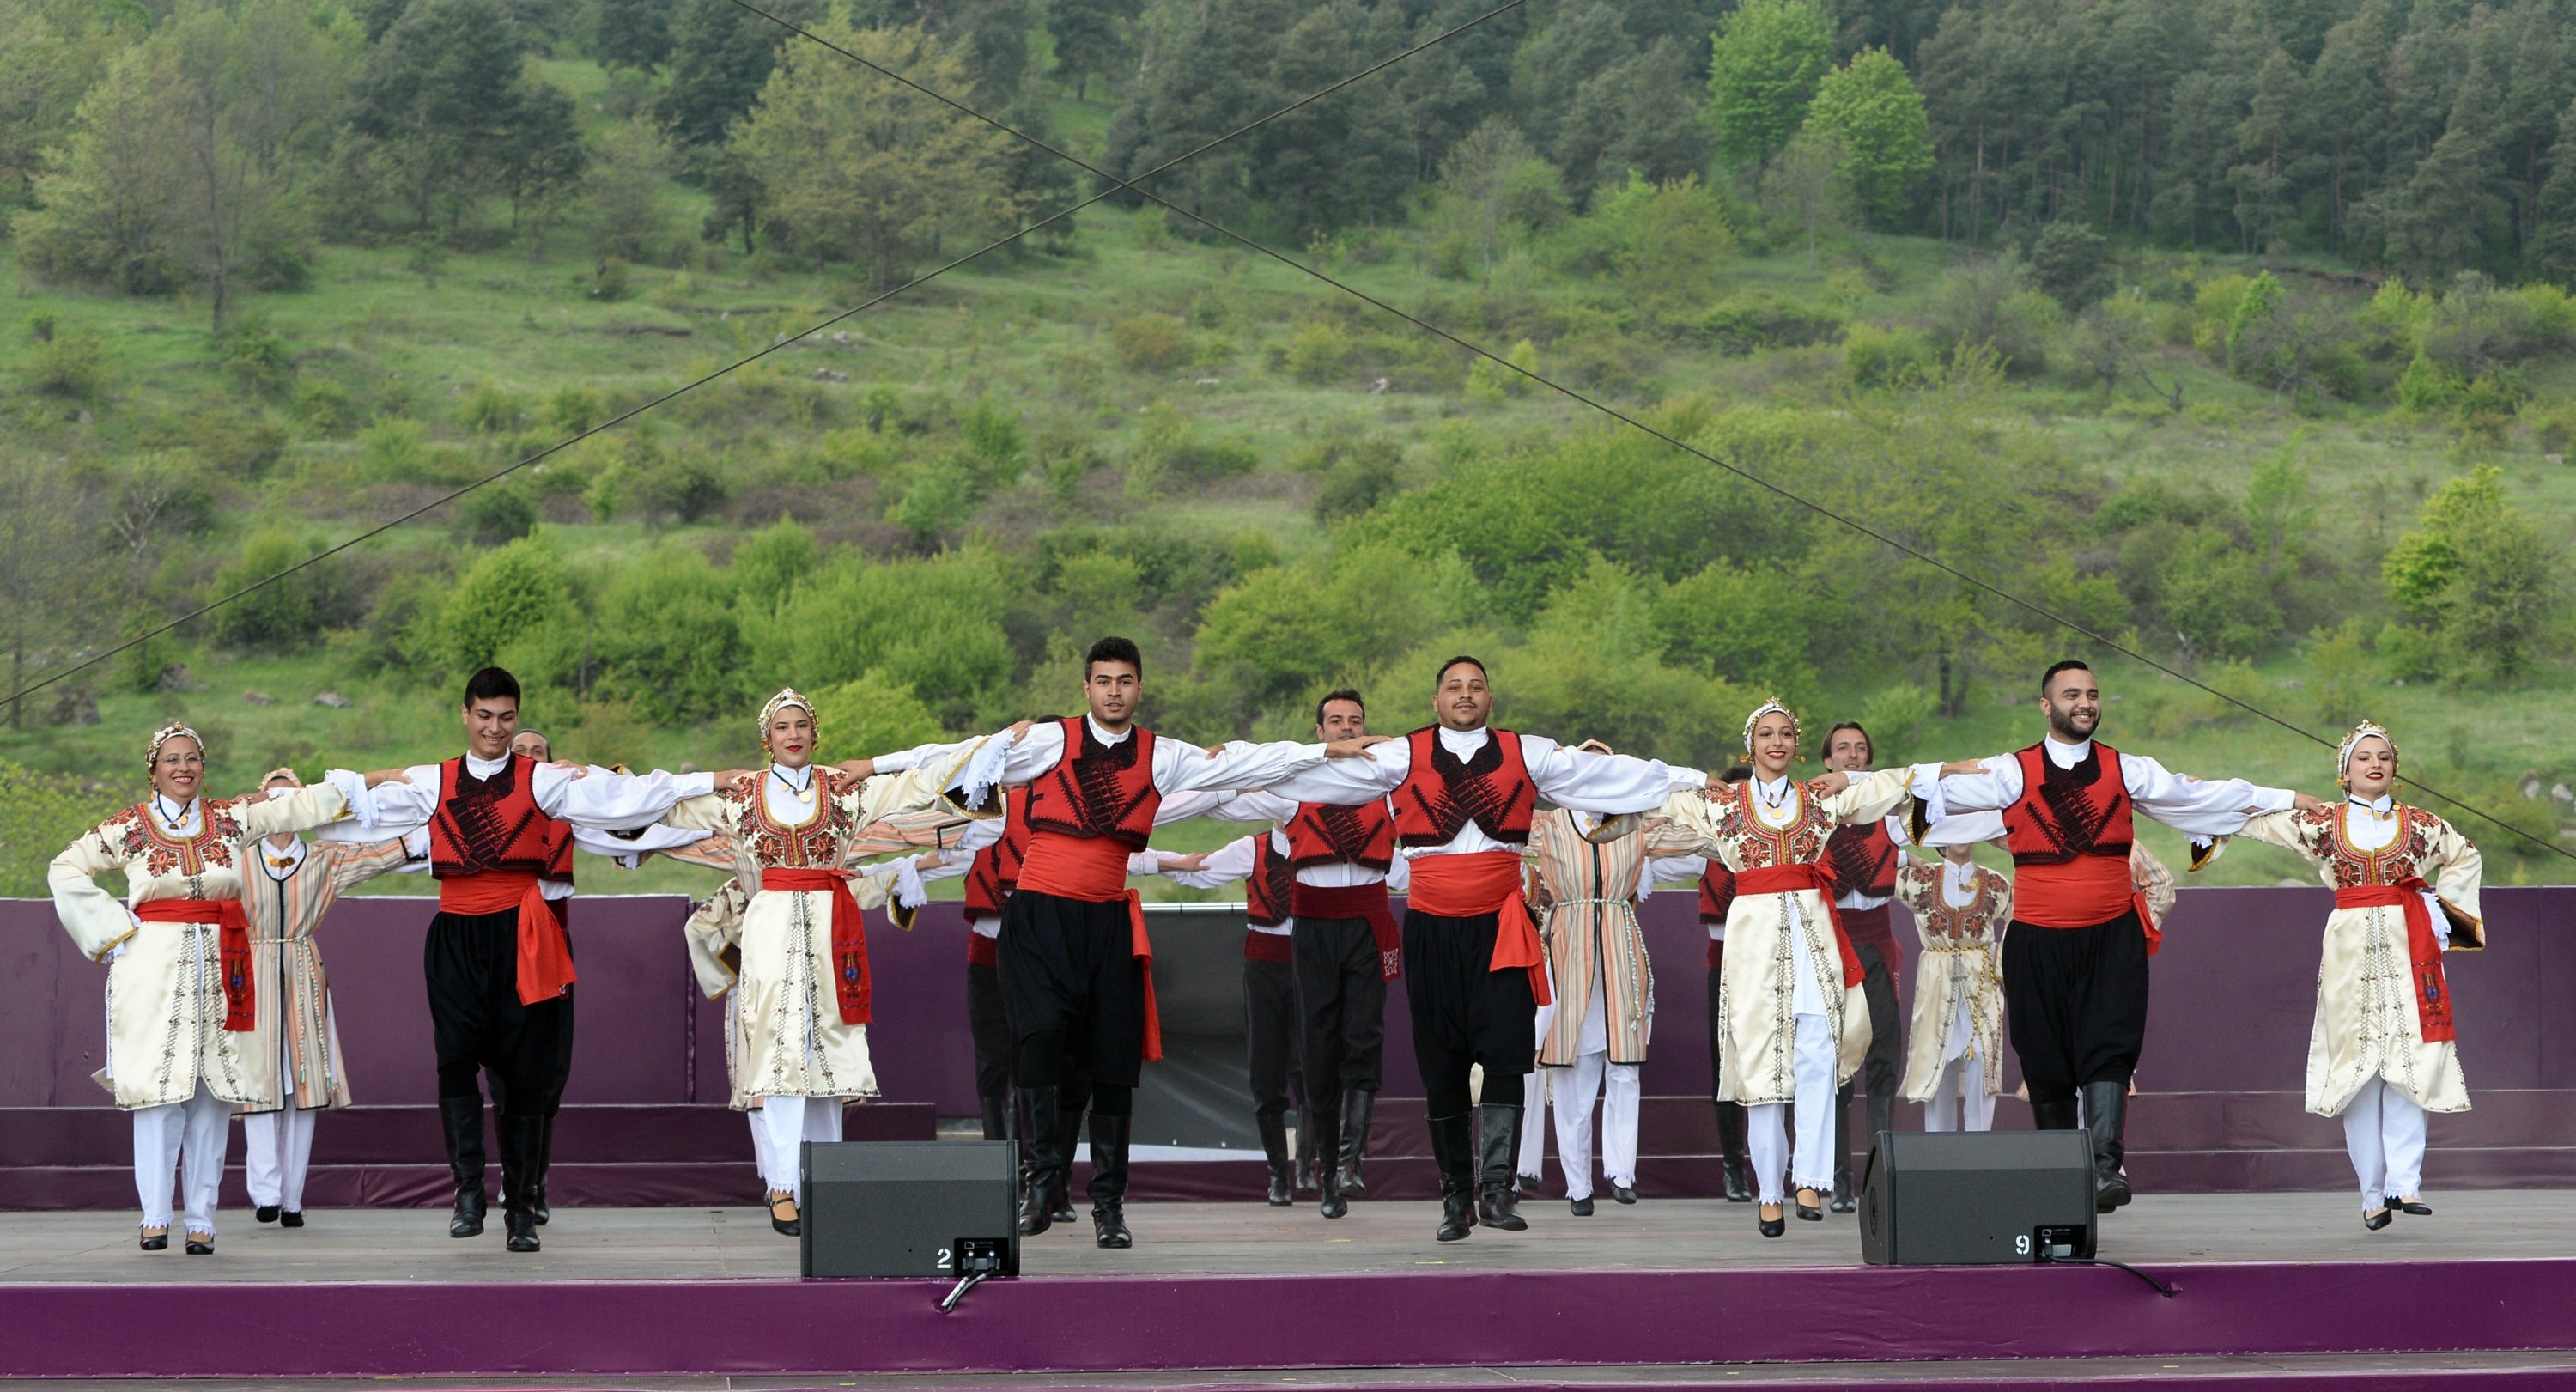   Azerbaycan'ın Karabağ bölgesinin sembol şehri Şuşa'da 'Harıbülbül' müzik festivali başladı.  Şuşa'nın Cıdır Ovası'nda başlayan festivalde TÜRKSOY üyesi ülkelerin müzik ve dans grupları performanslarını sergiledi.  ( AZERTAC - Anadolu Ajansı )